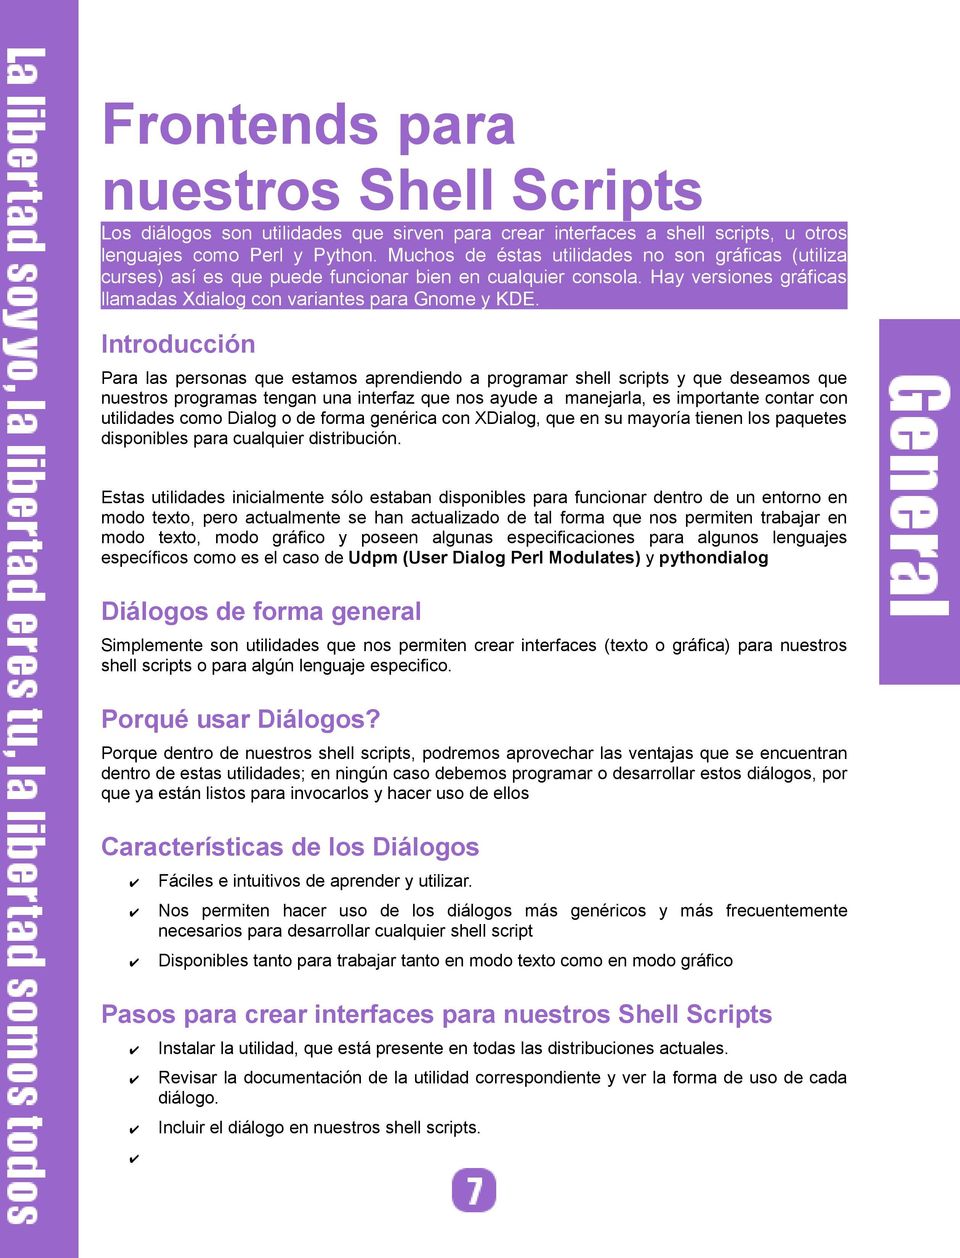 Introducción Para las personas que estamos aprendiendo a programar shell scripts y que deseamos que nuestros programas tengan una interfaz que nos ayude a manejarla, es importante contar con